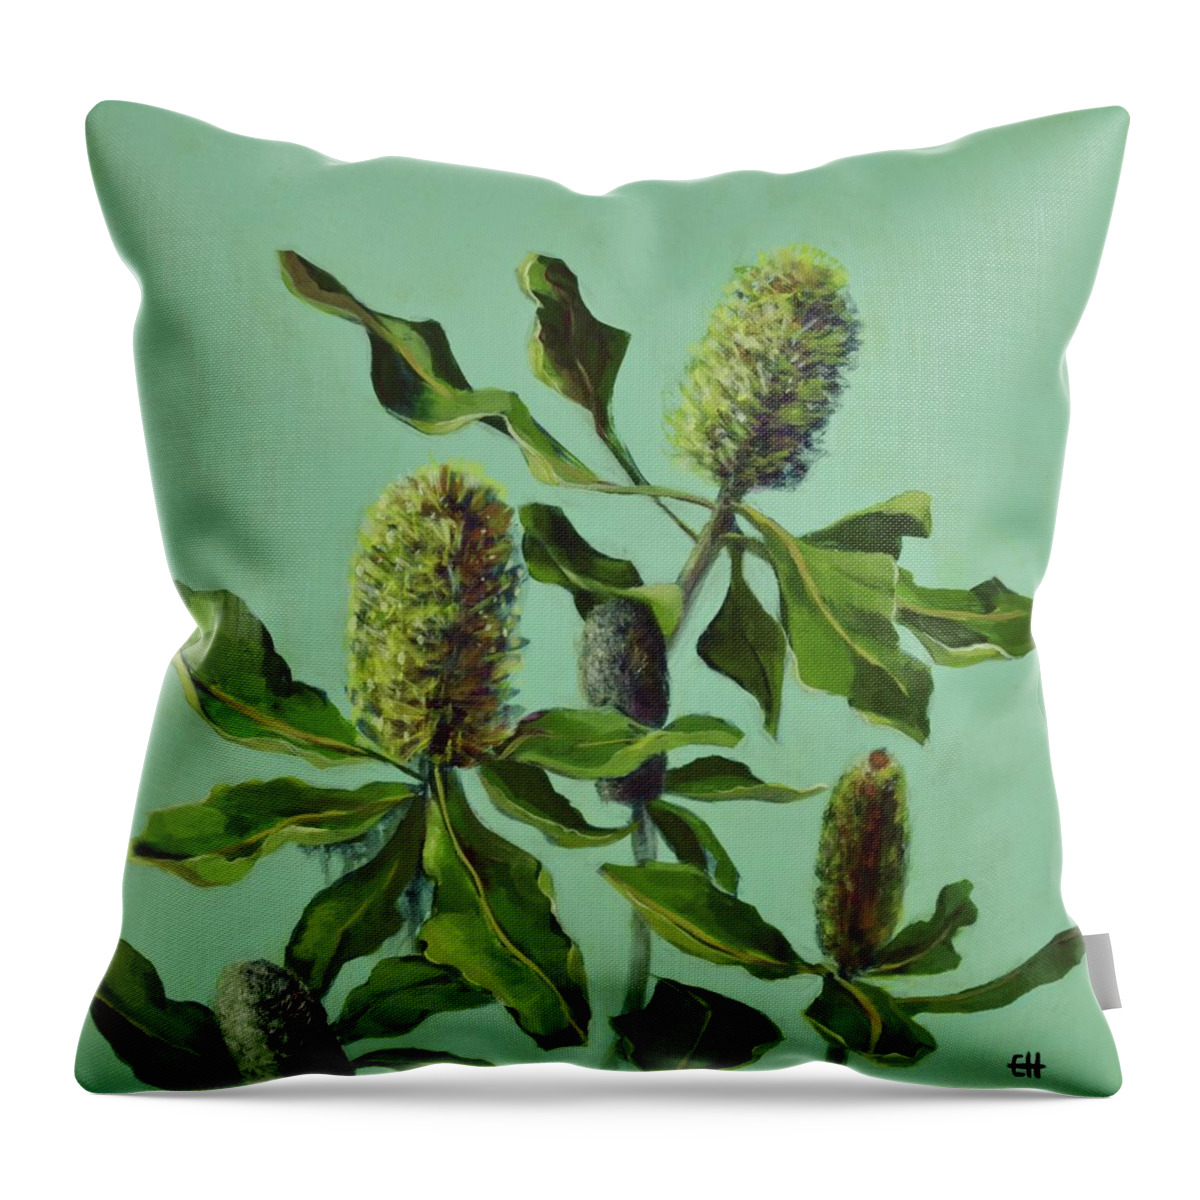 Australian Flora Throw Pillow featuring the painting Banksias Australian Flora Painting by Chris Hobel